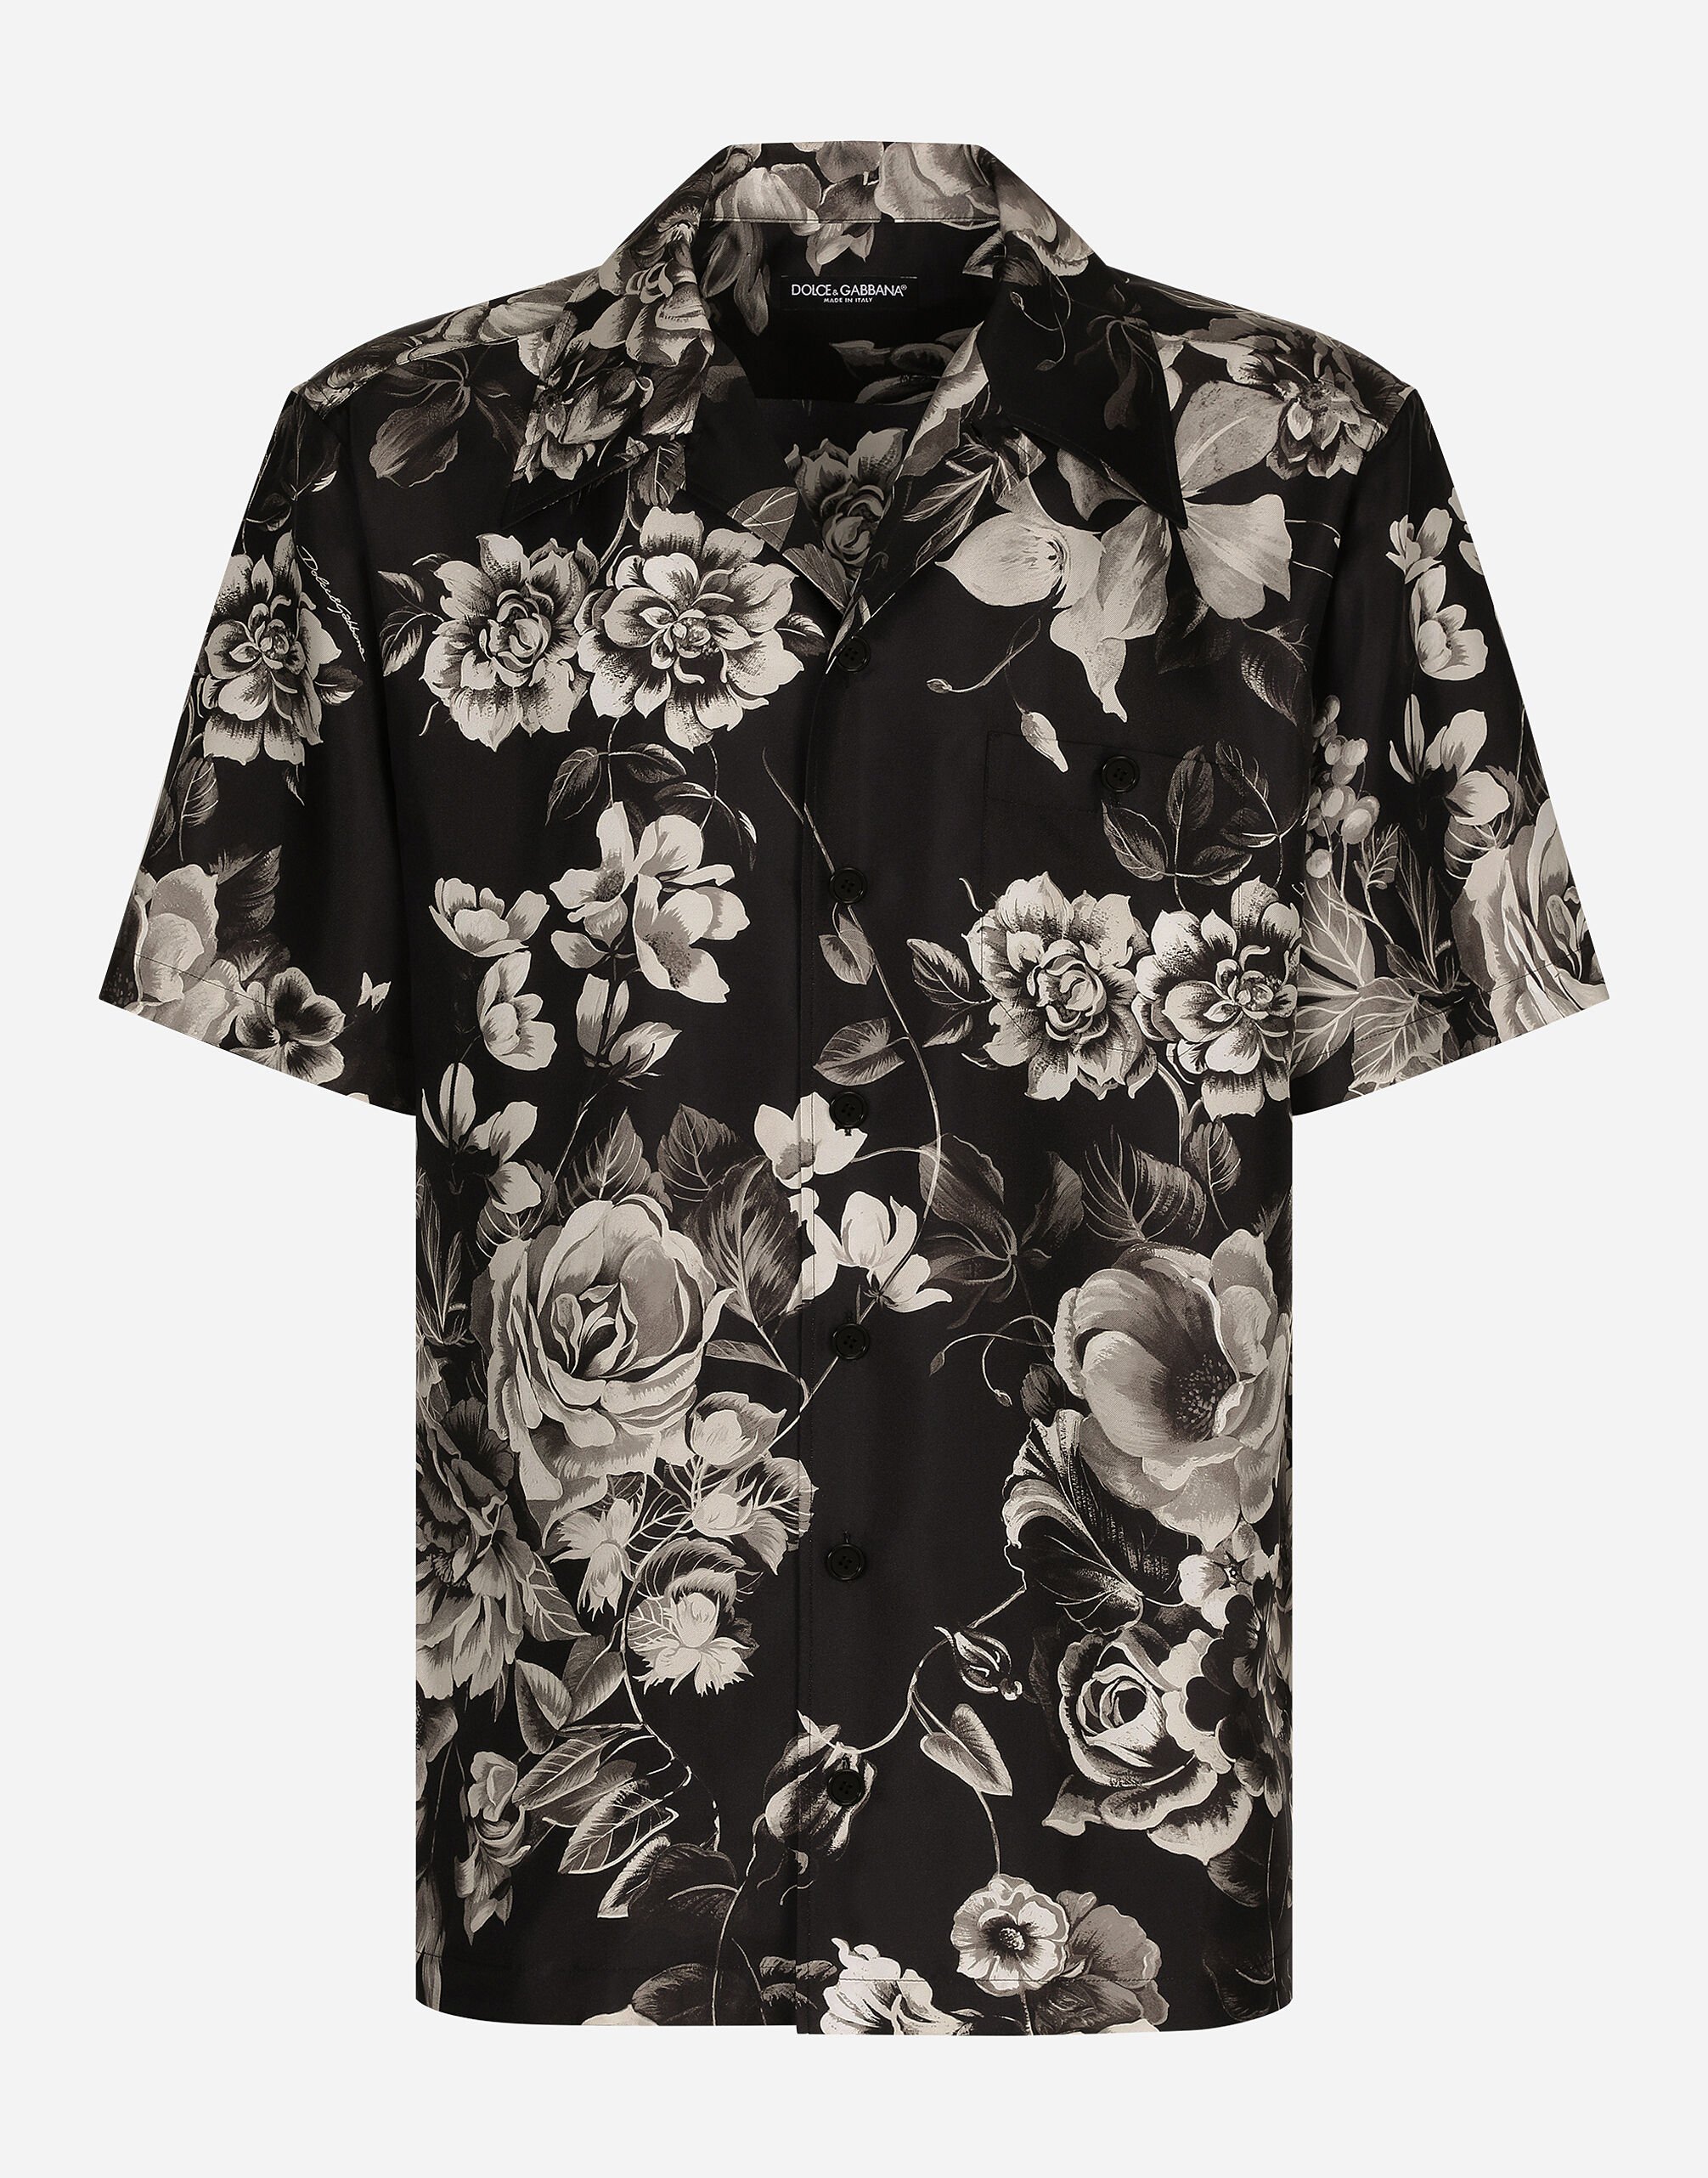 Dolce & Gabbana Camisa Hawaii de seda con estampado de flores Imprima G9AZDTFS6N5